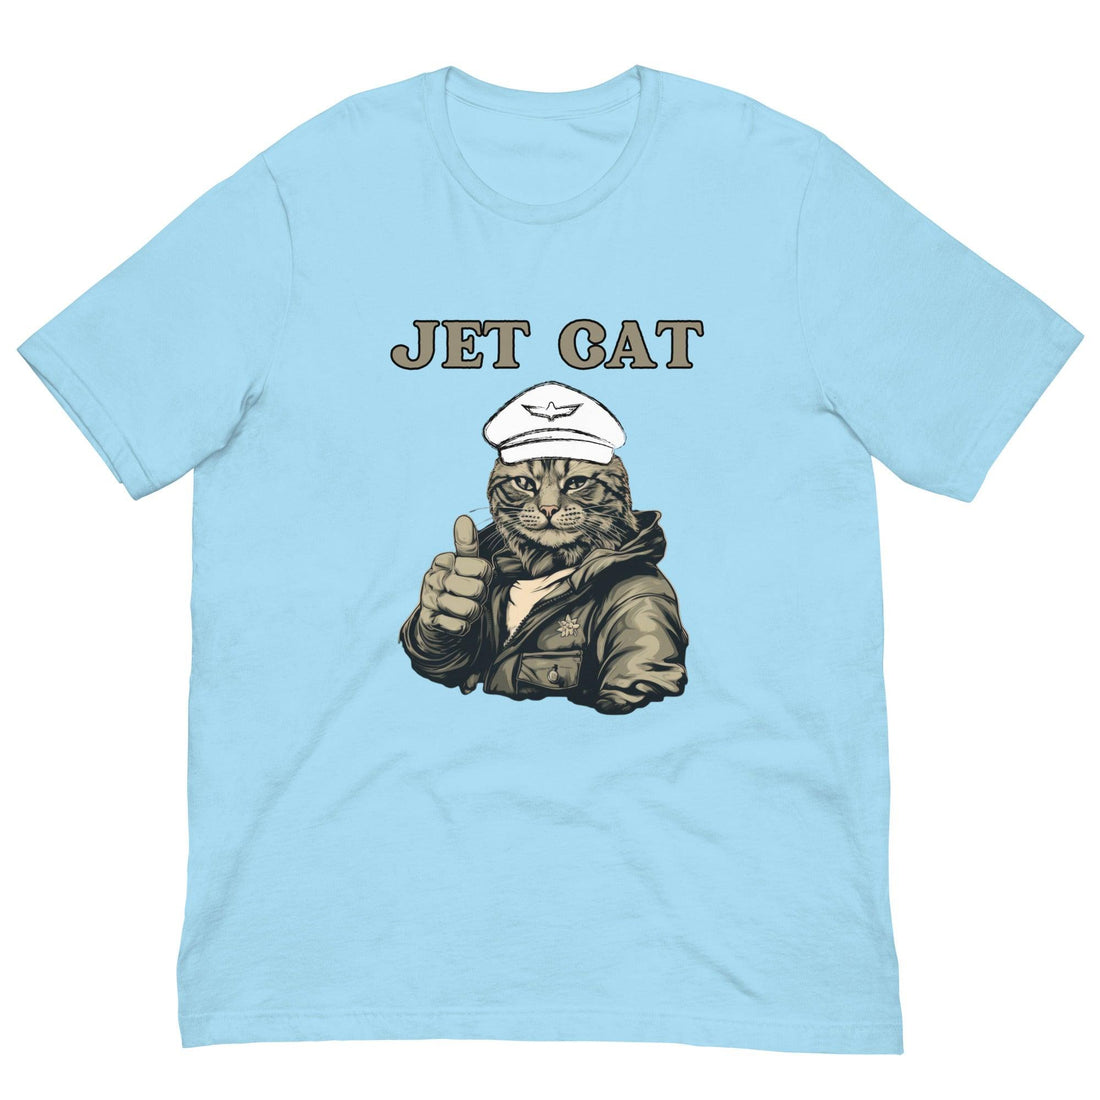 Jet Cat Cat Shirt - Cat Shirts USA